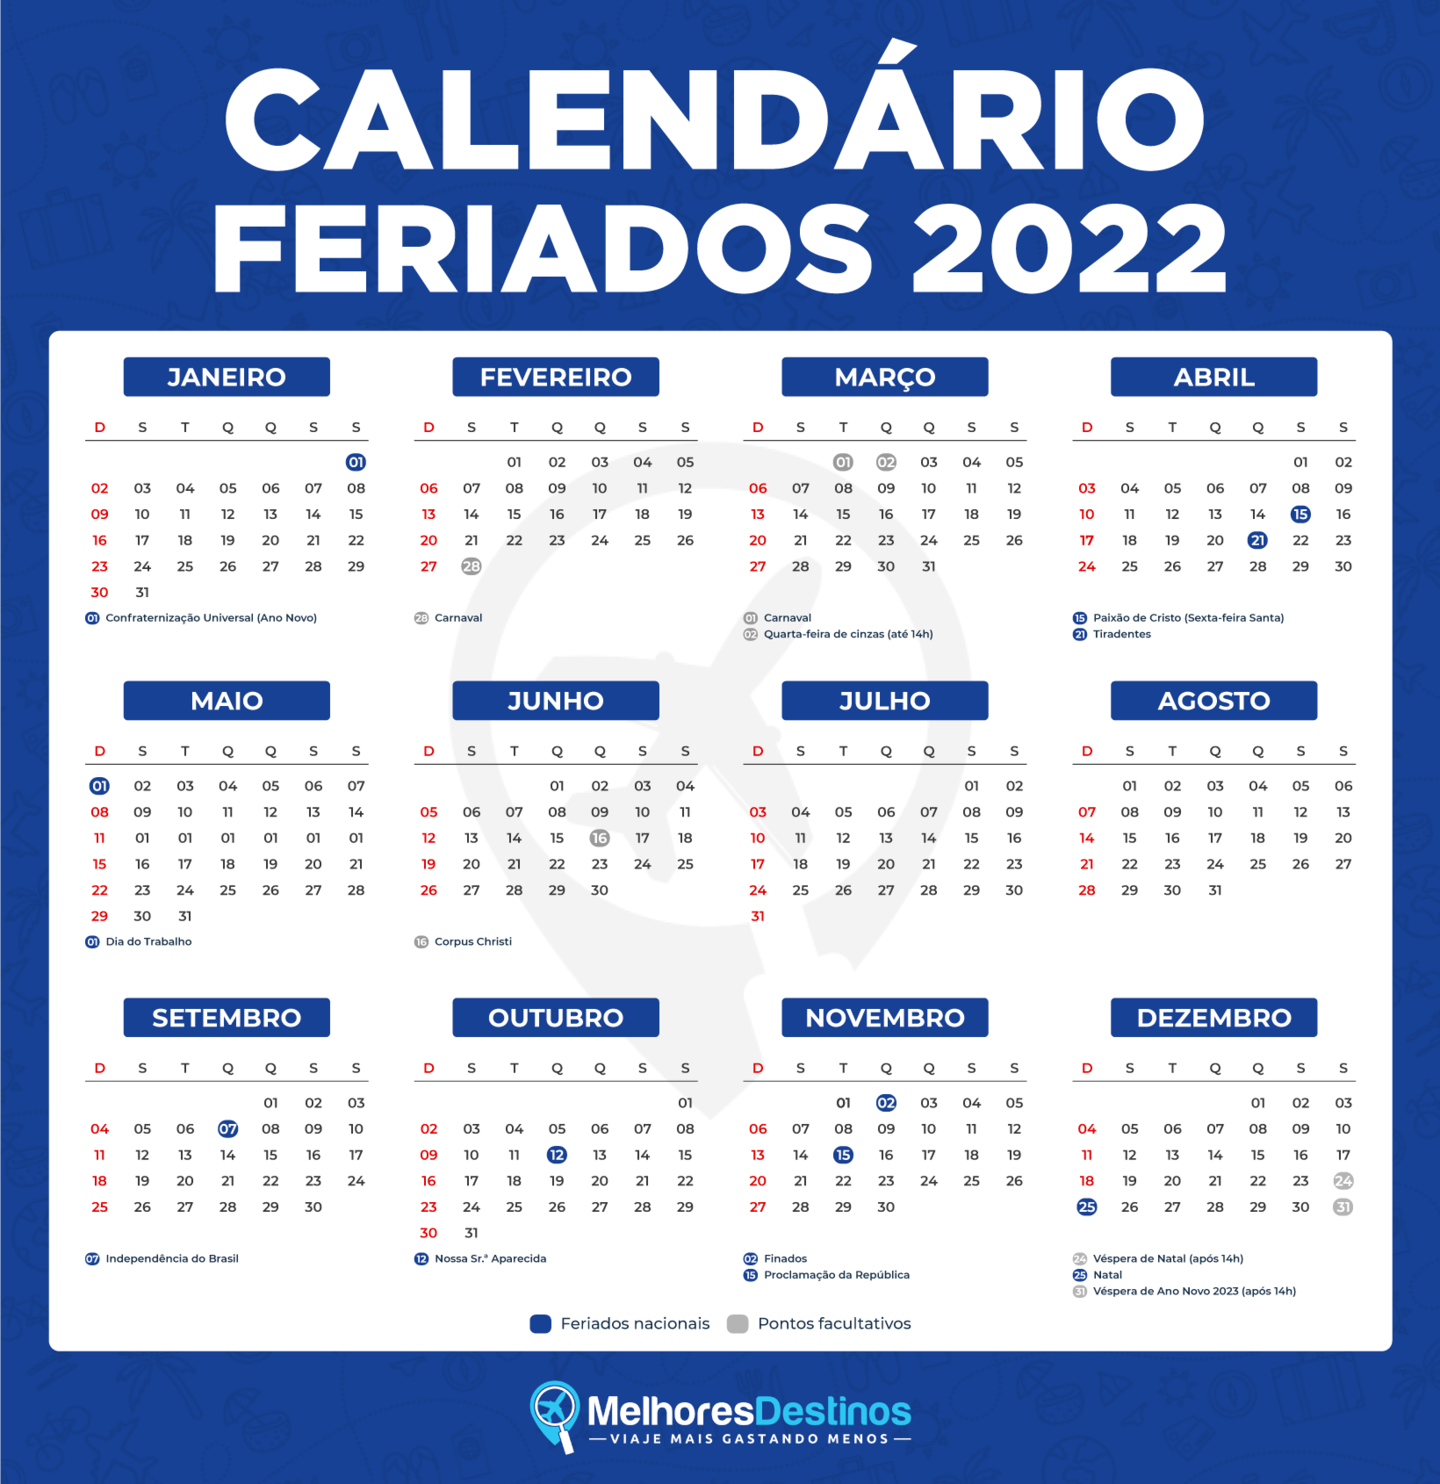 Ano de 2022 terá apenas um feriado nacional prolongado Douranews